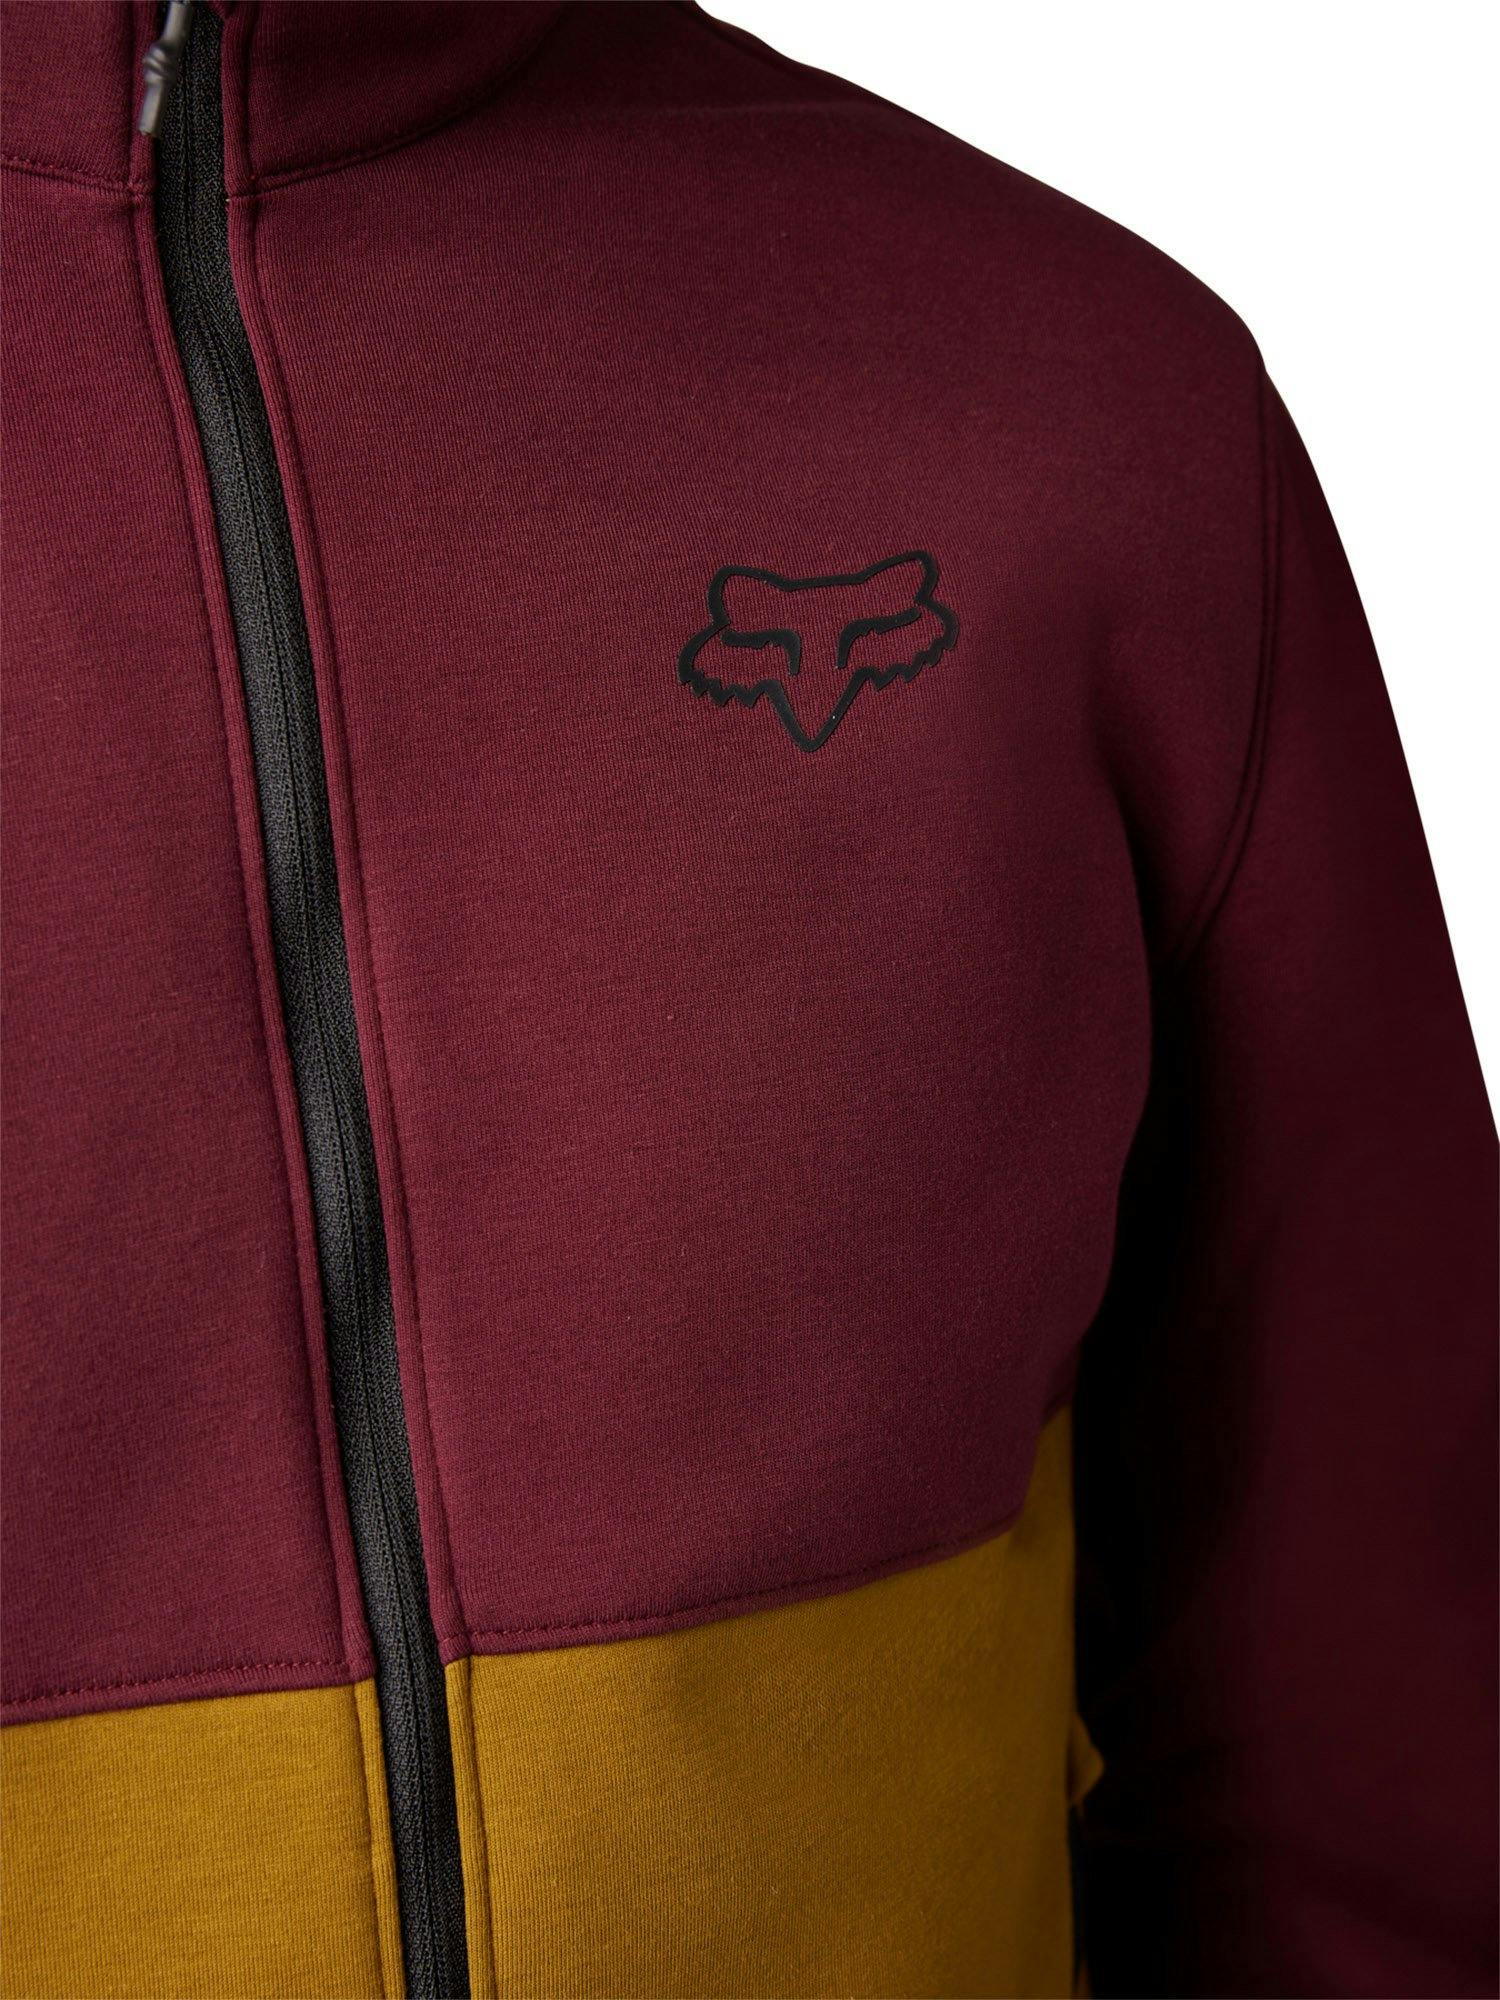 Product gallery image number 2 for product Ranger Fire Fleece Crew Sweatshirt - Men's